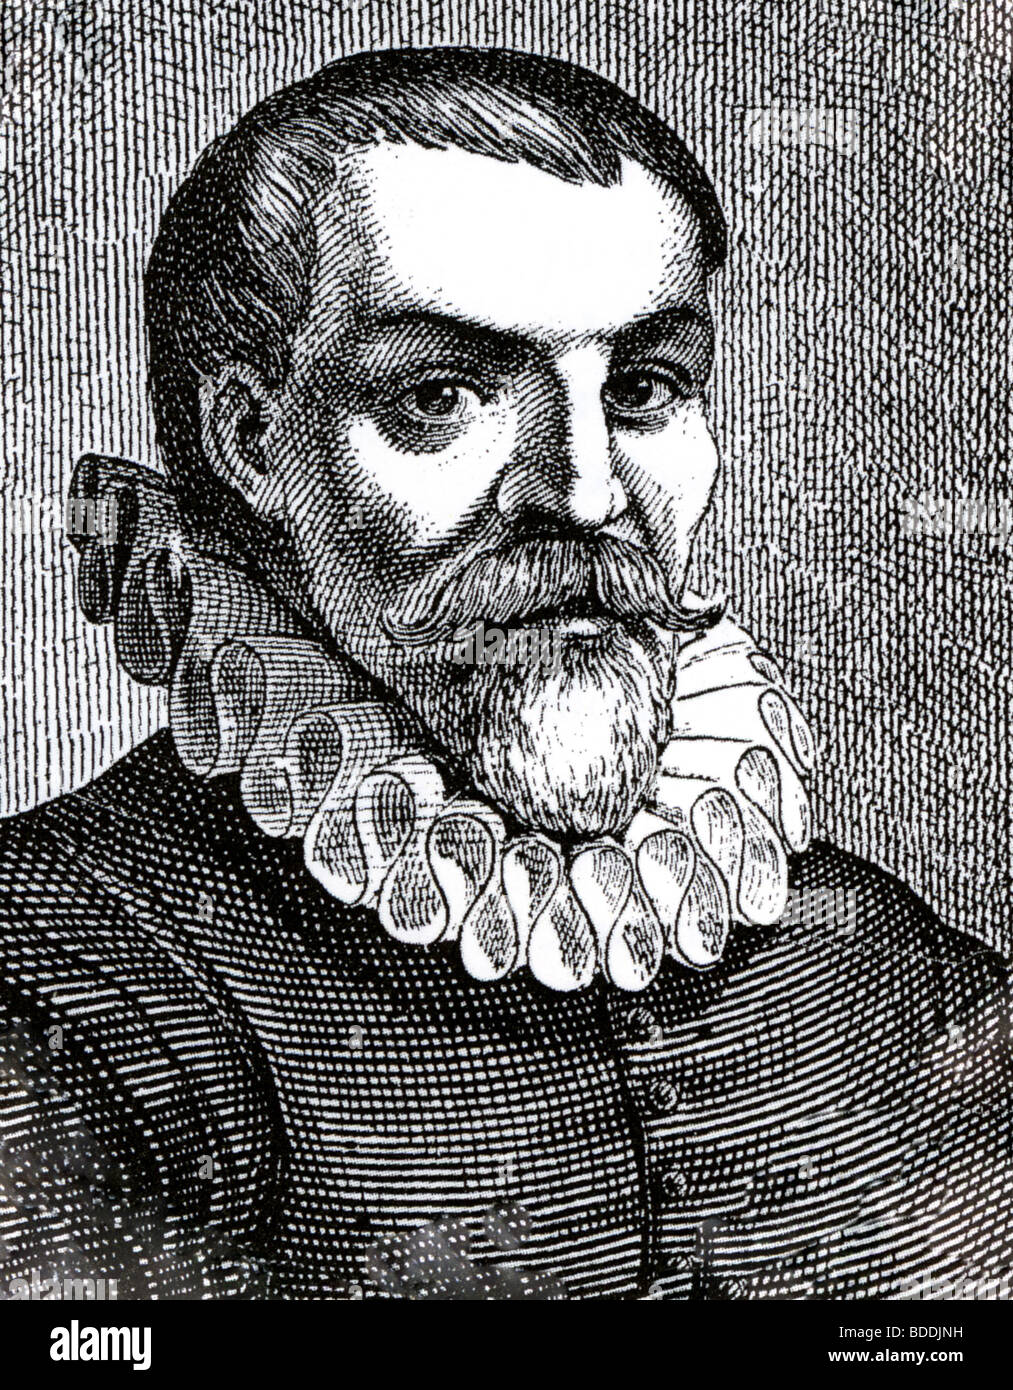 WILLEM BARENTS ( c 1550 - 1597), navigateur hollandais, cartographe et explorateur d'après qui le nom est du détroit de Barents Banque D'Images